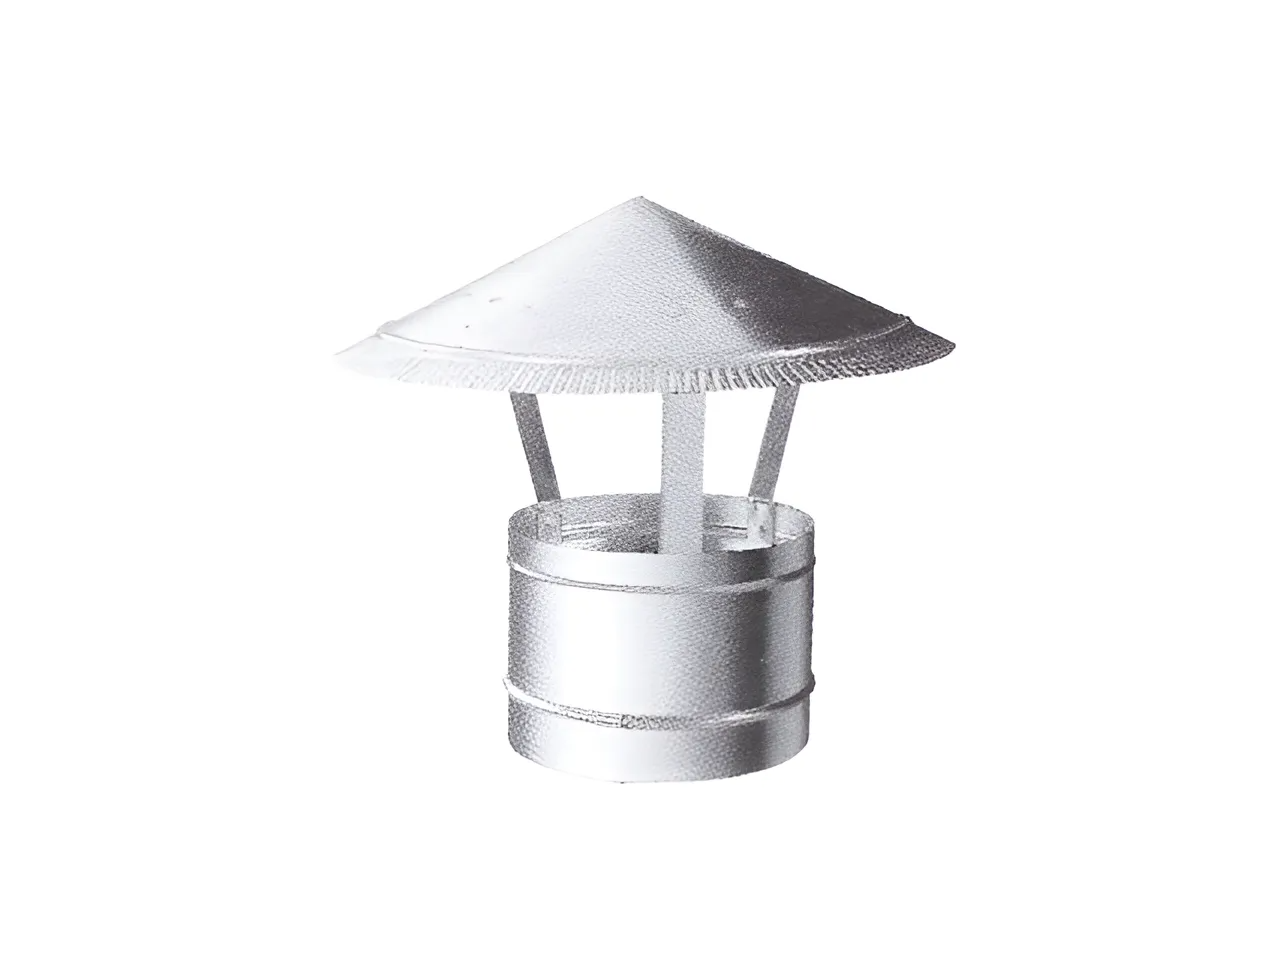 Зонтик крышный ВИЗИОНЕР D 160 мм оцинкованная сталь 99-005-160 антирринум абрикосовый зонтик